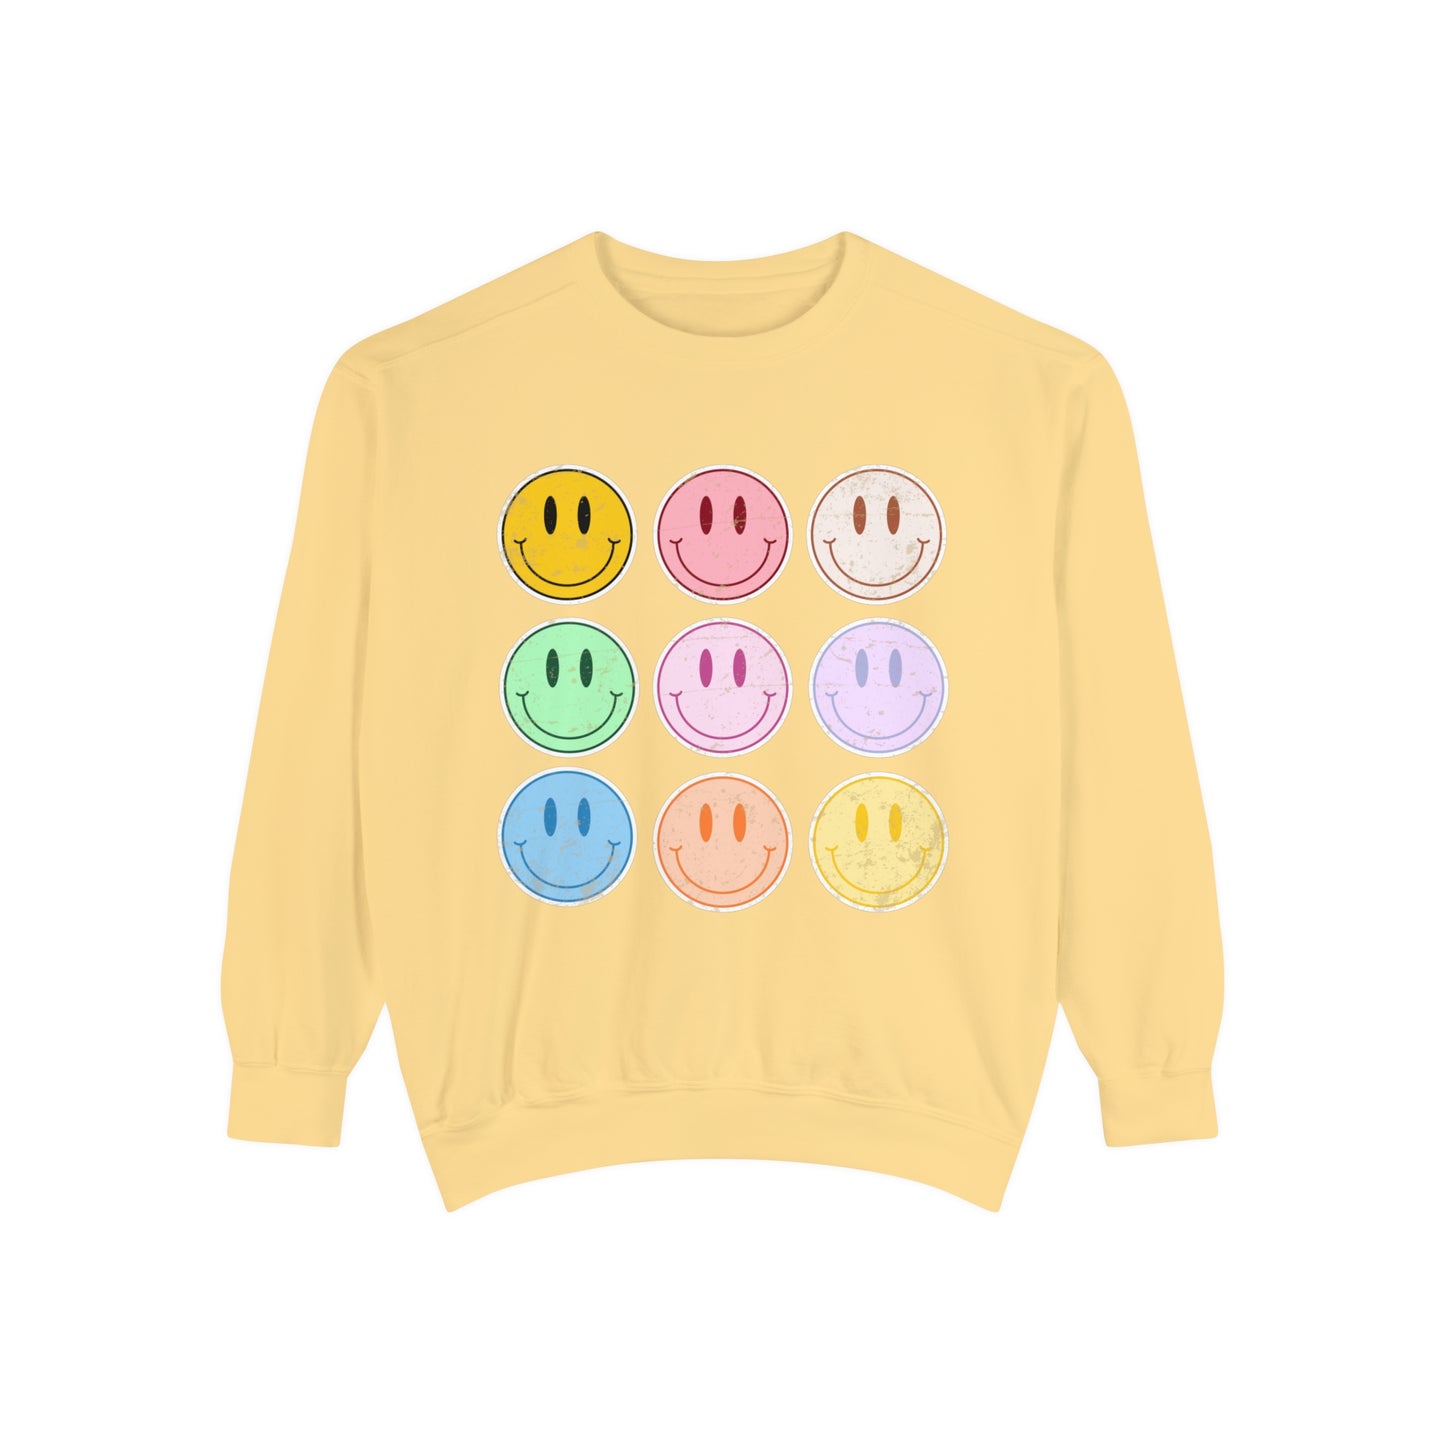 Retro Comfort Colors Sweatshirt